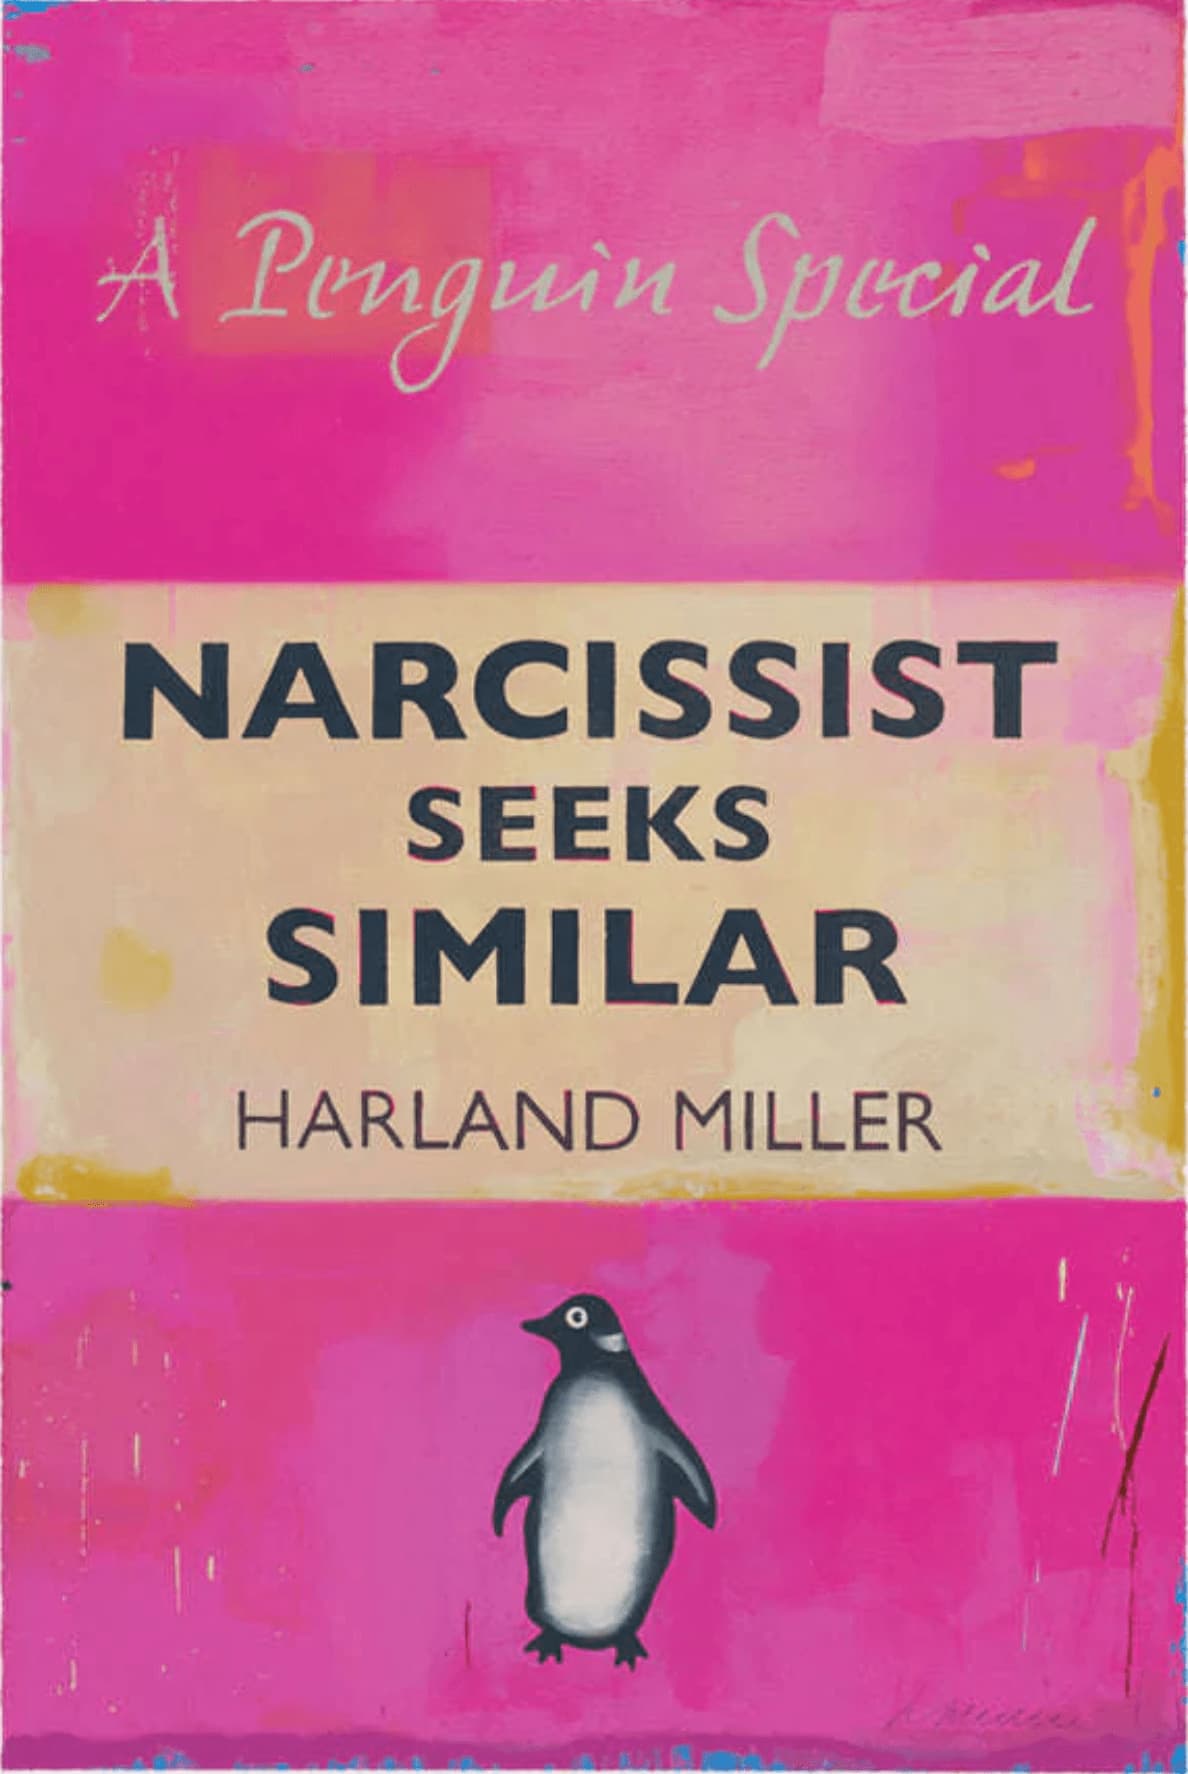 Harland Miller, Narcissist Seeks Similar, 2021